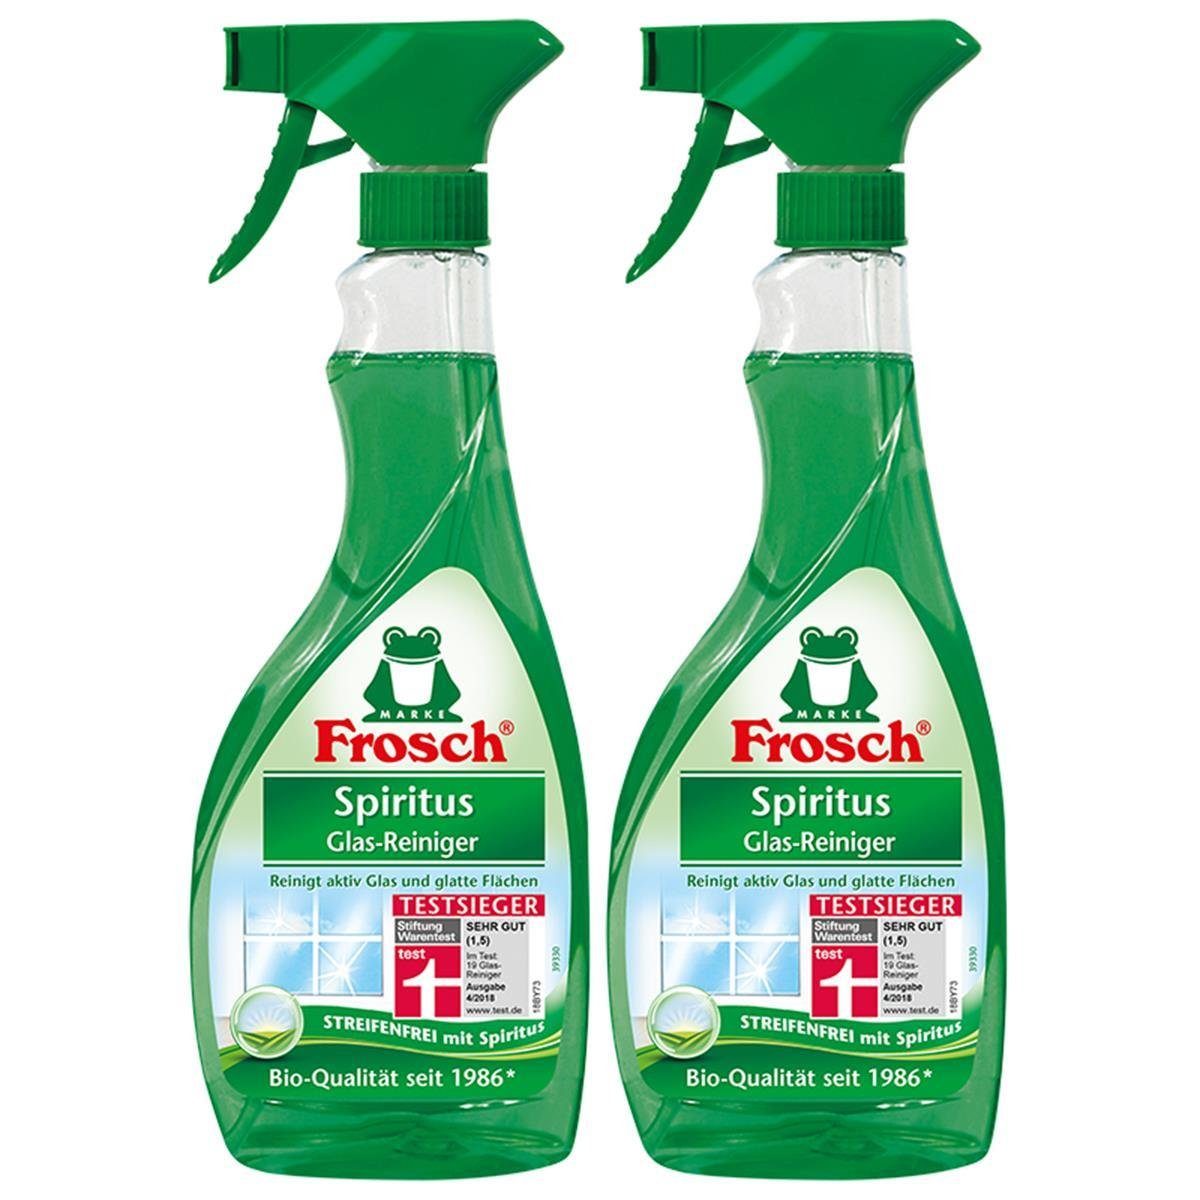 Frosch 2x Spiritus ml FROSCH 500 Glasreiniger Sprühflasche Glas-Reiniger